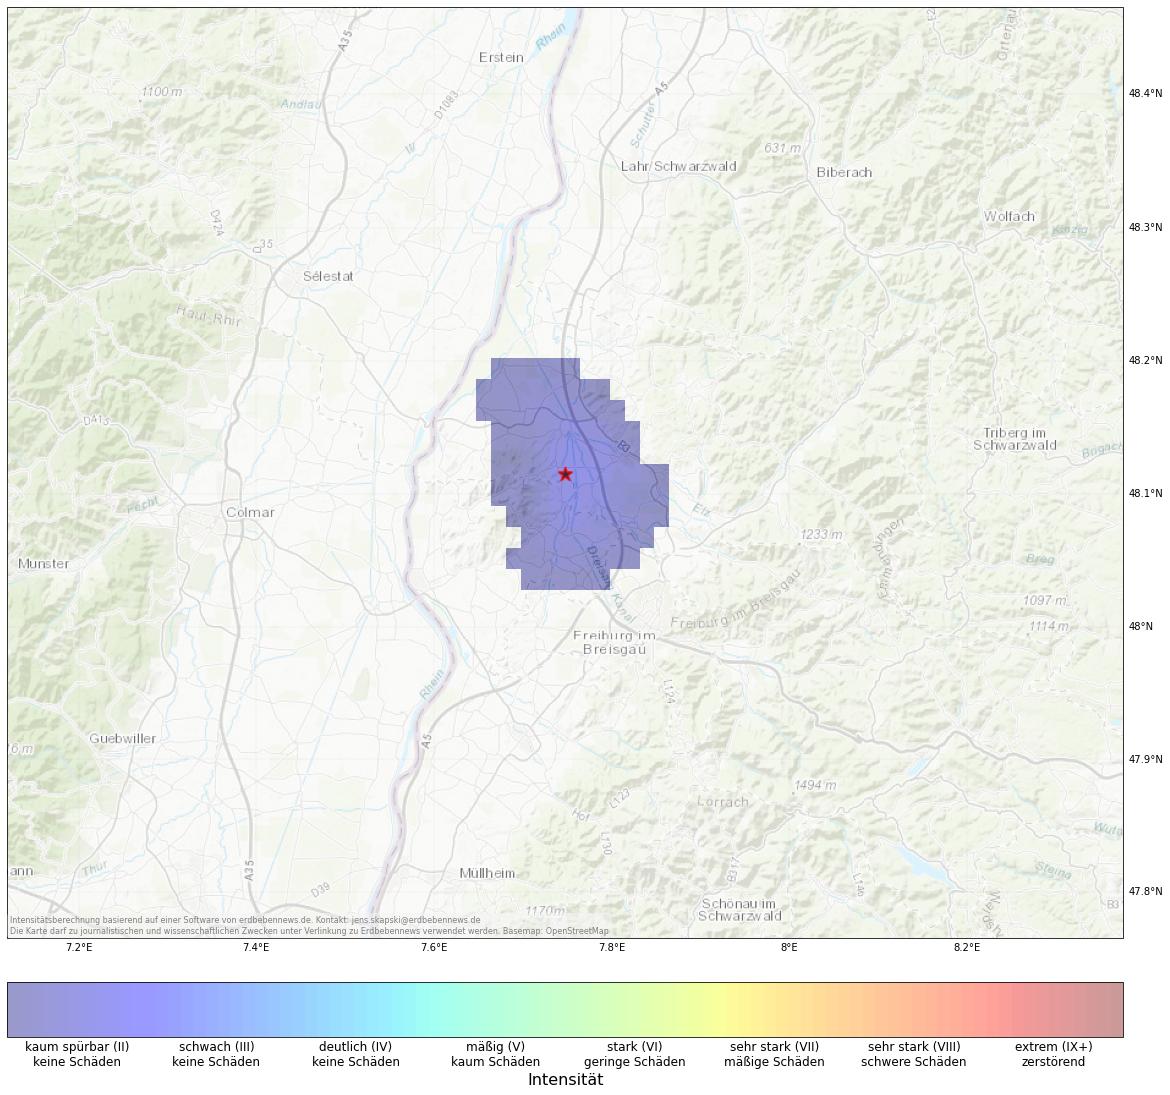 Berechnete Intensität (ShakeMap) des Erdbebens der Stärke 2.2 am 30. November, 17:30 in Deutschland